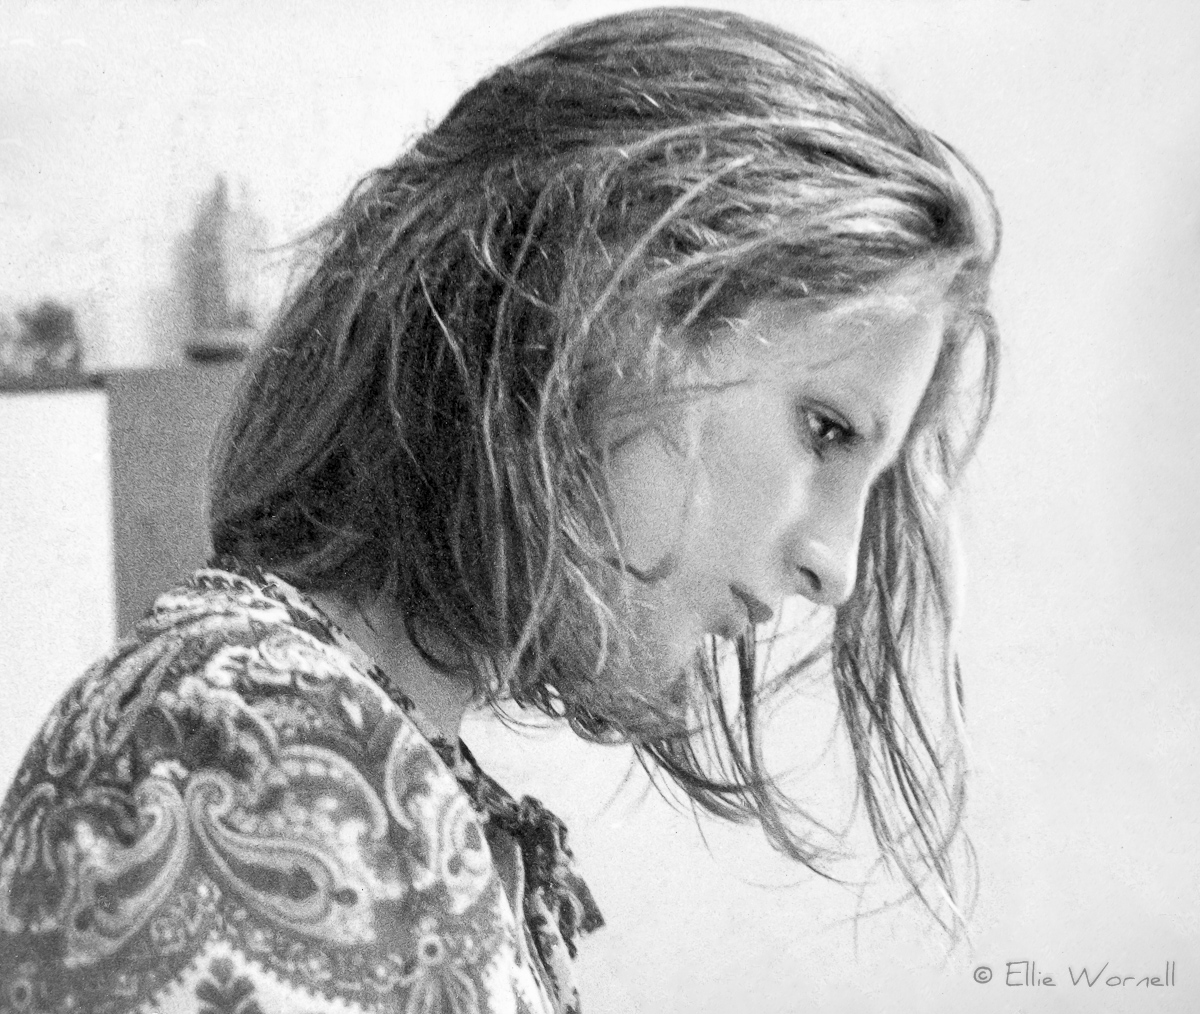 Ellie Wornell (Kennard) - 1968. Photo taken by Peter Erskine